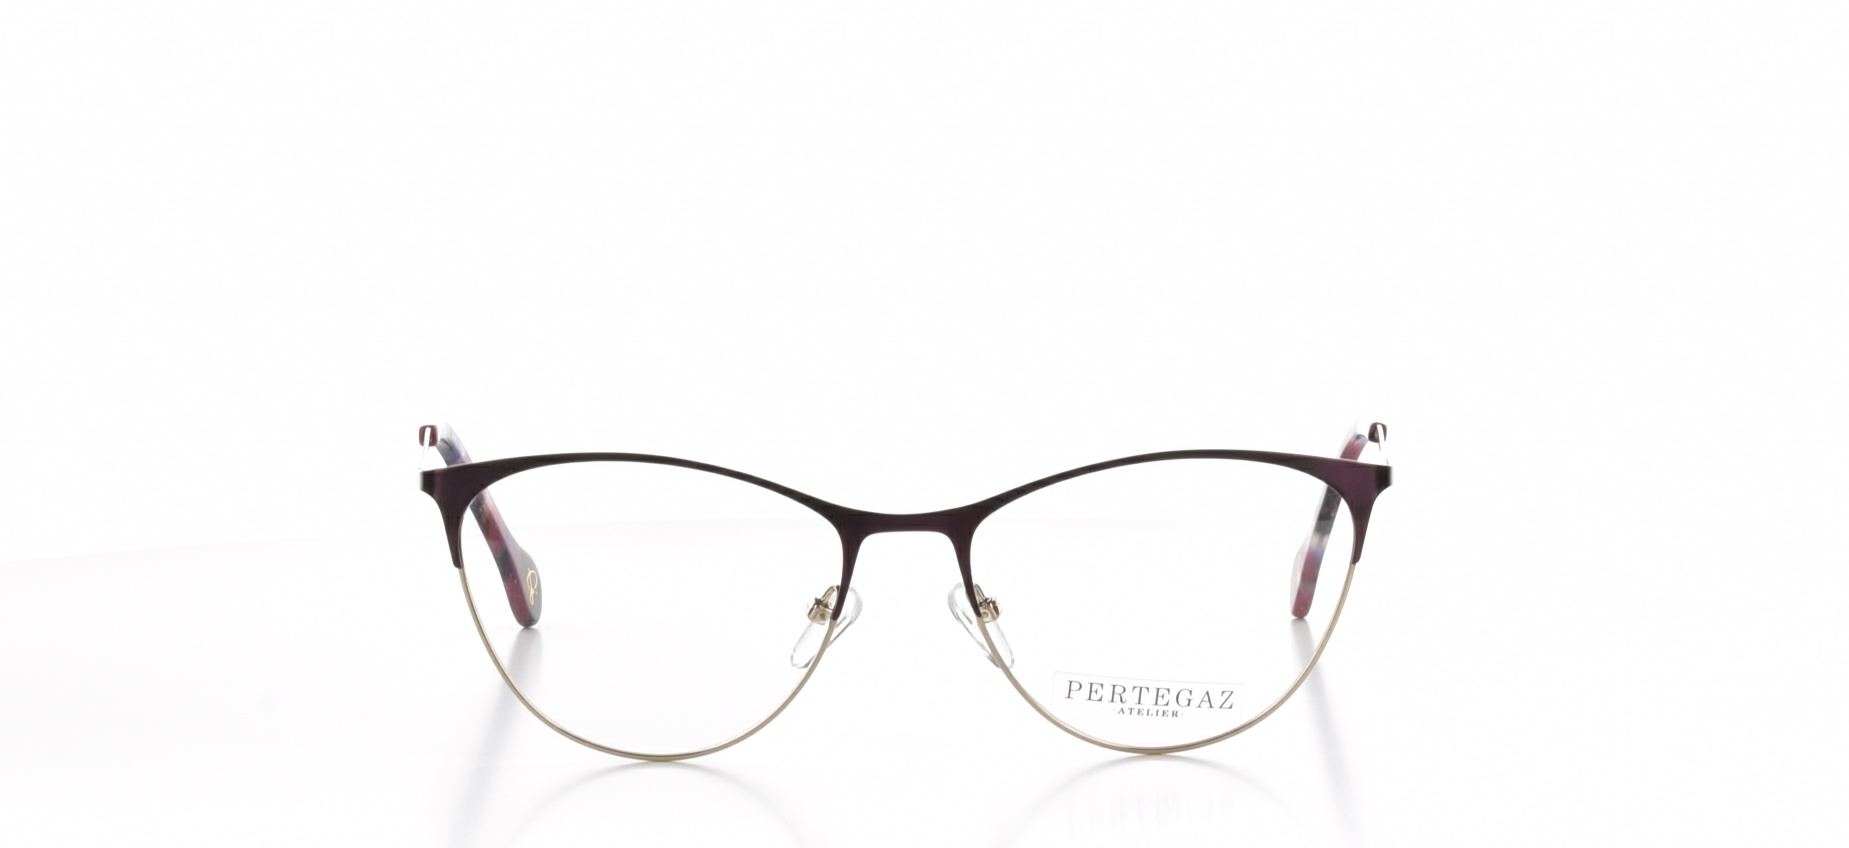 Rama ochelari vedere Pertegaz